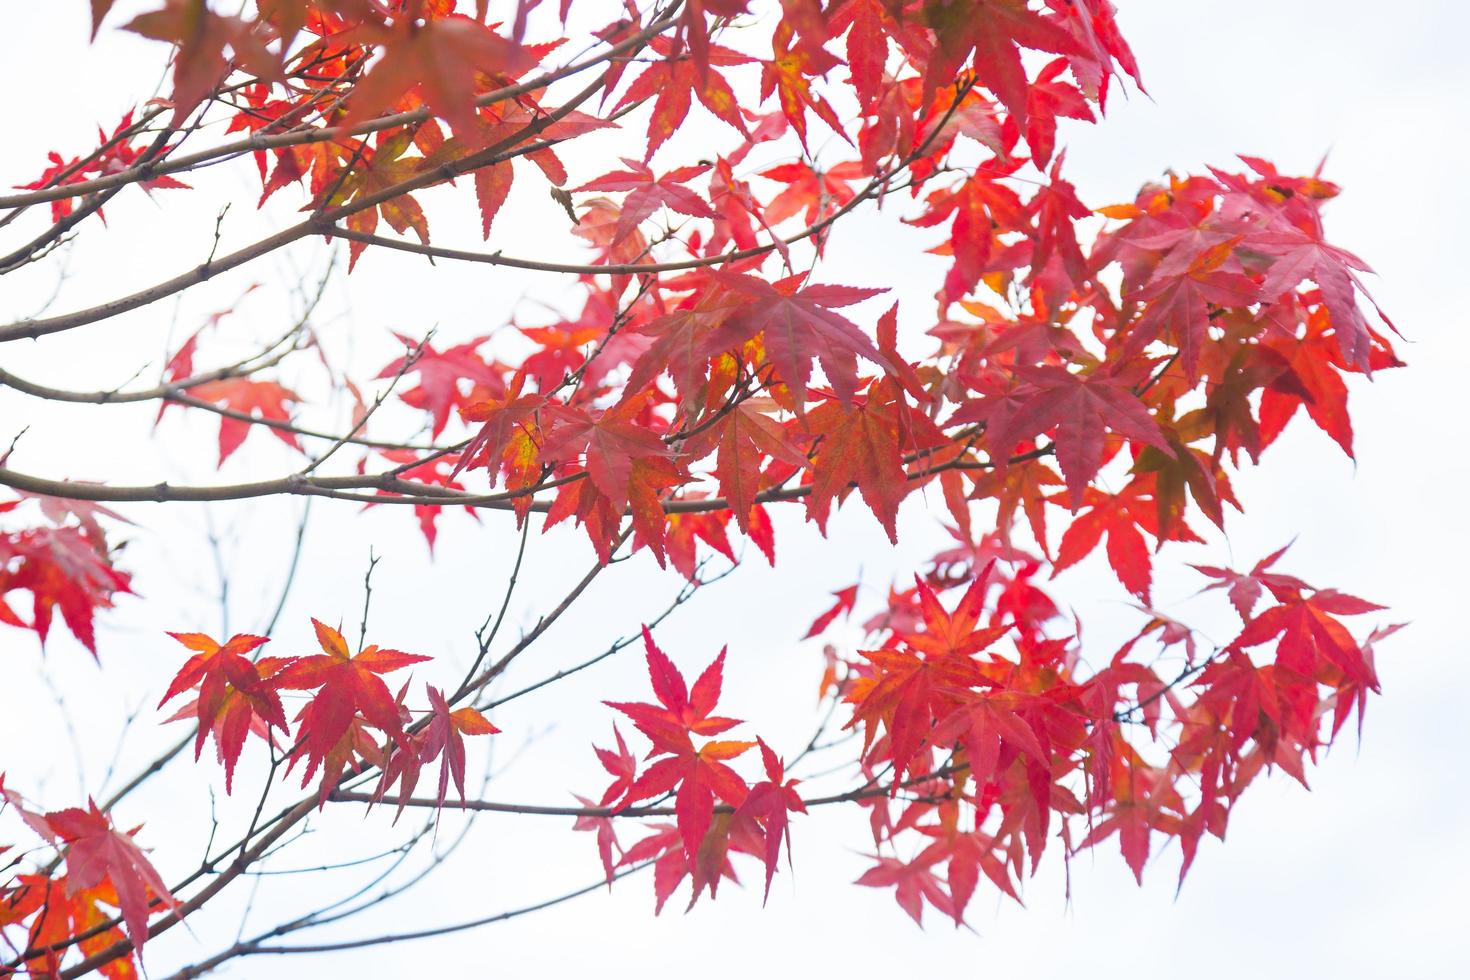 foglie rosse sull'albero foto